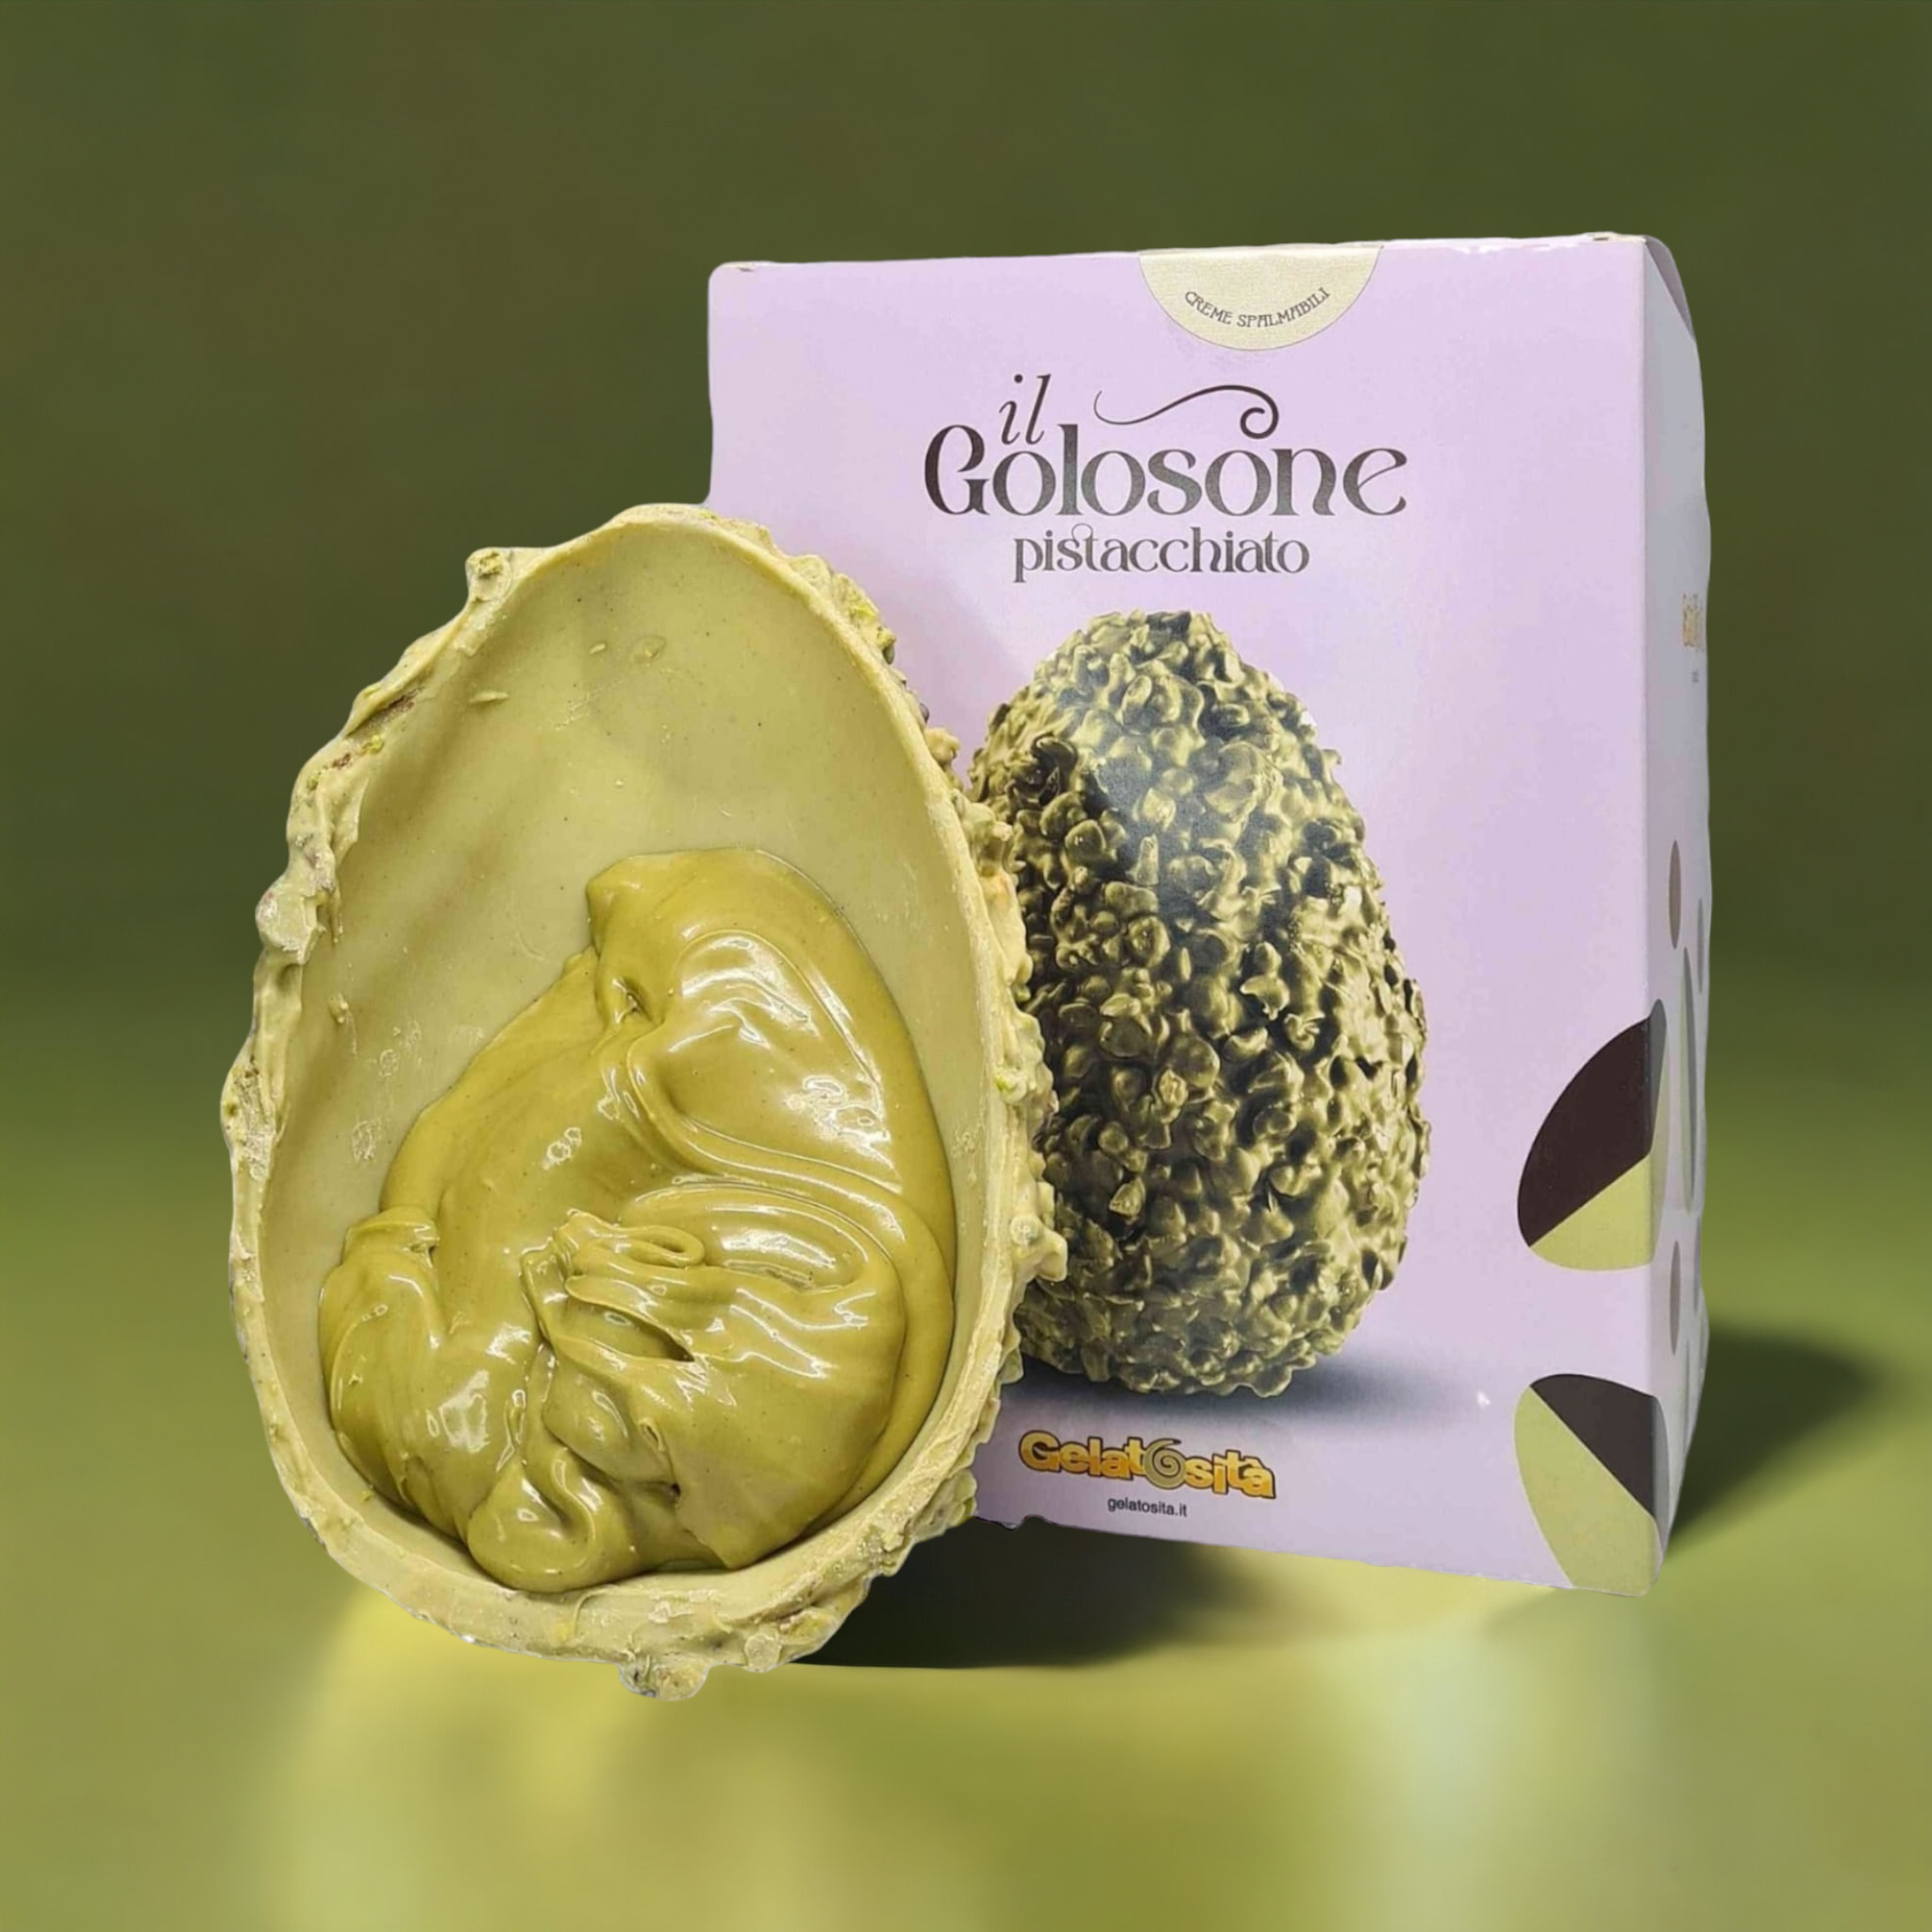 Uovo Golosone al Pistacchio ripieno di Crema al Pistacchio, artigianale 350g + 100g crema